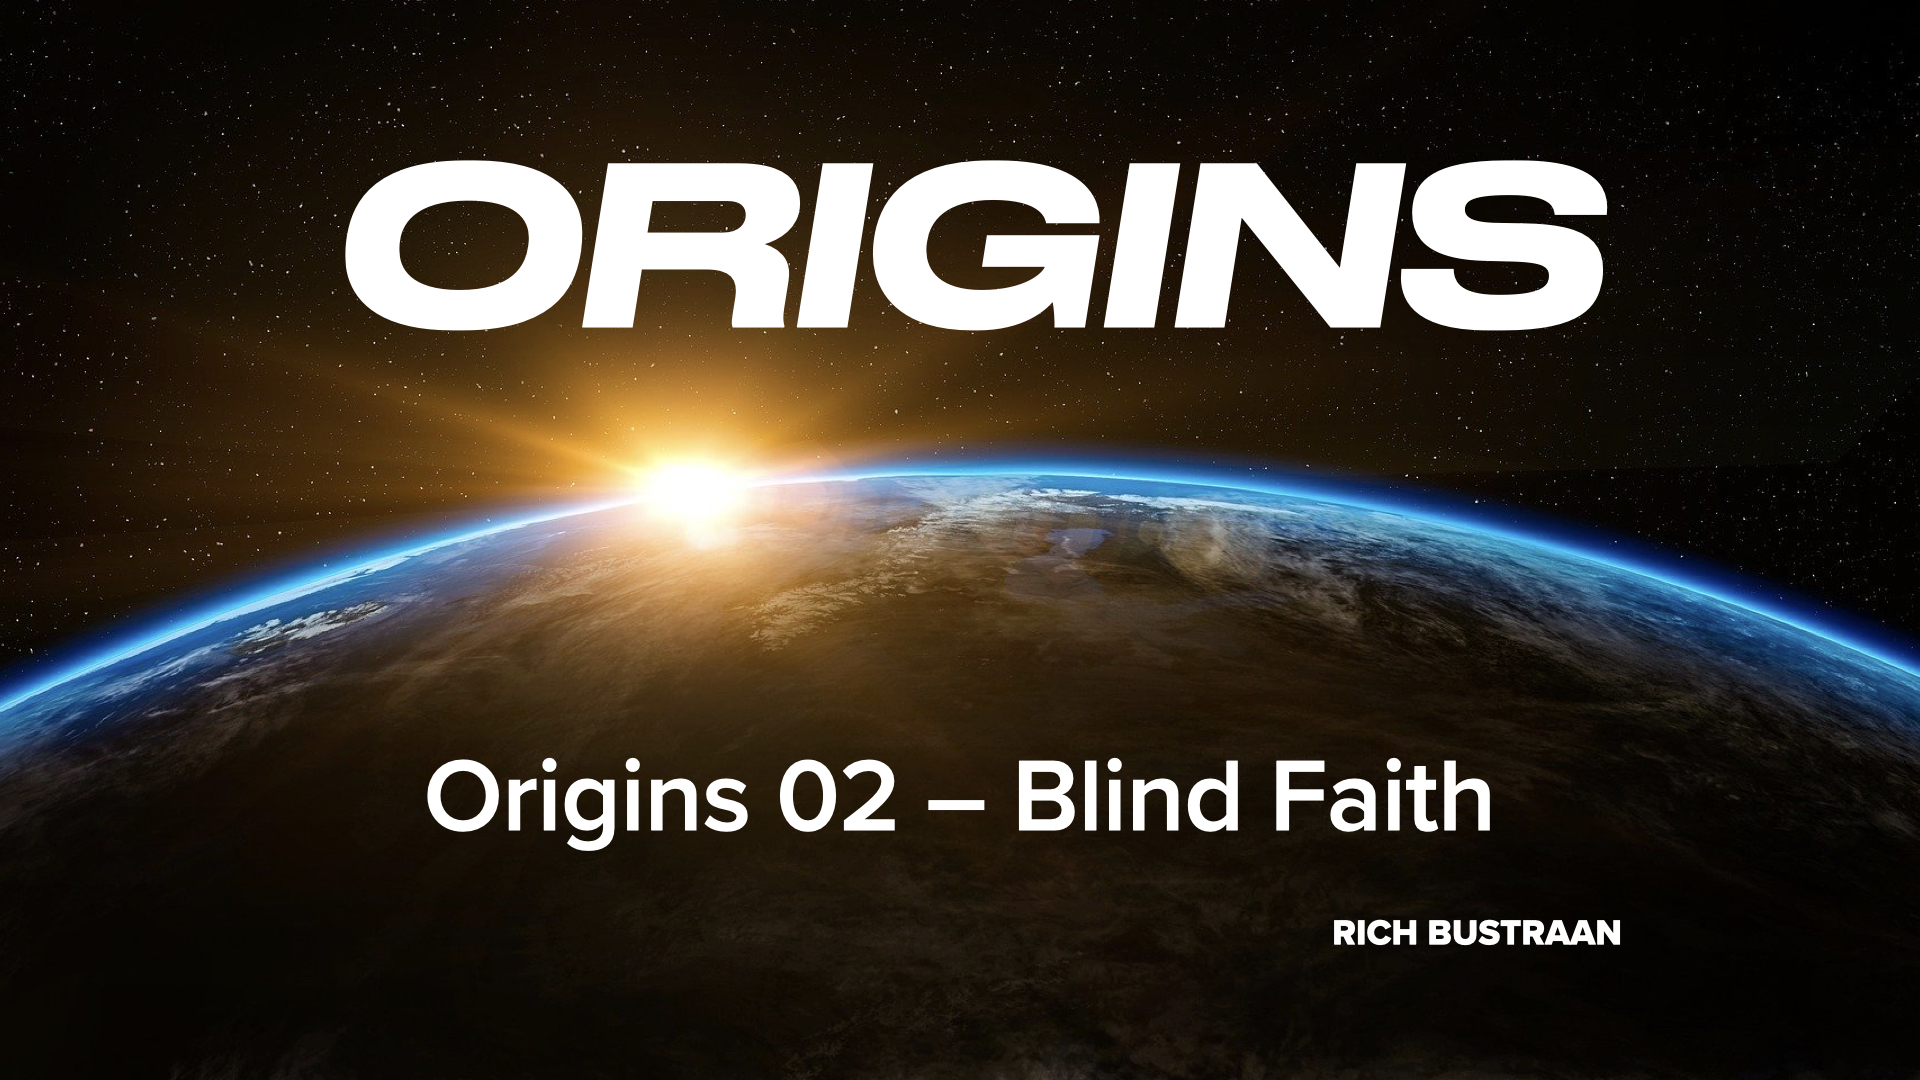 Origins 02 - Blind Faith